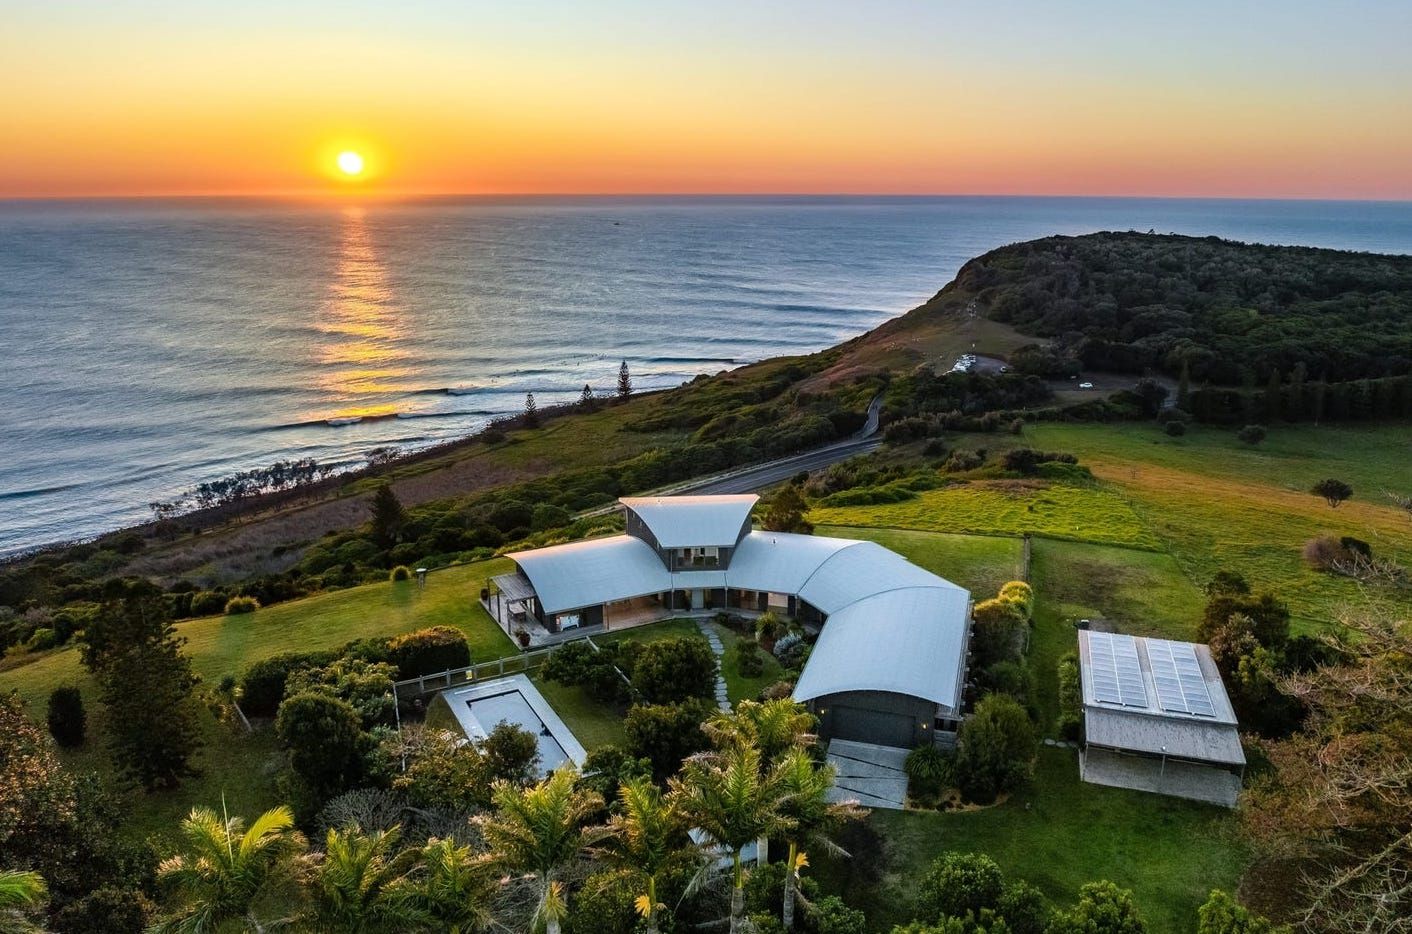 Ідеальний будинок для сім'ї - на березі моря в Австралії продають справжній шедевр - Нерухомість